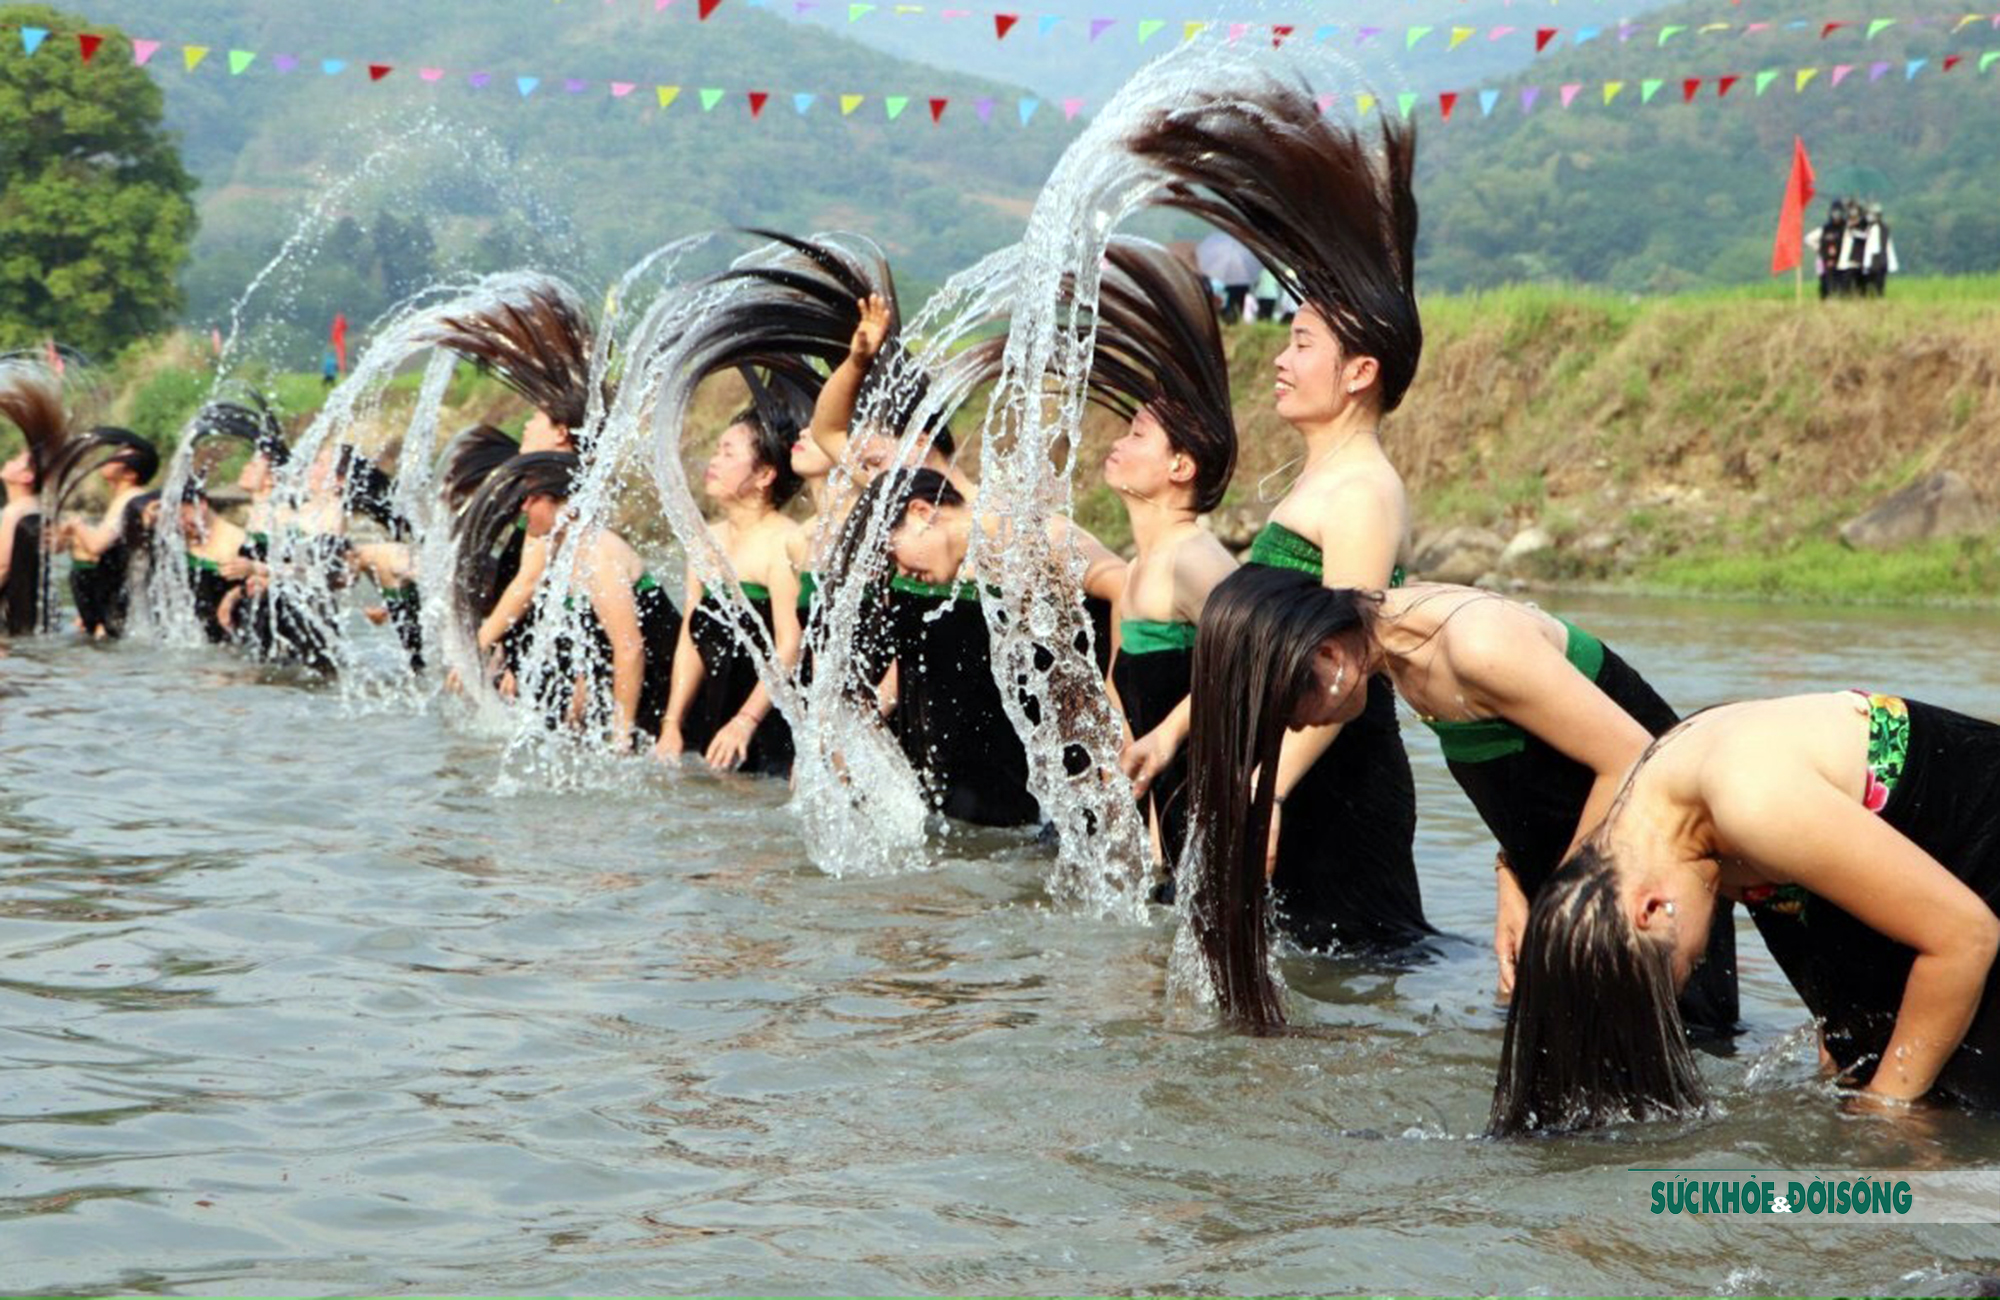 Lễ hội té nước: Hãy thưởng thức hình ảnh của Lễ Hội Té Nước để chiêm ngưỡng khung cảnh truyền thống và sắc màu náo nhiệt của ngày hội này. Chắc chắn bạn sẽ cảm thấy hào hùng và đầy giản dị với nét đẹp của nền văn hóa Việt Nam.